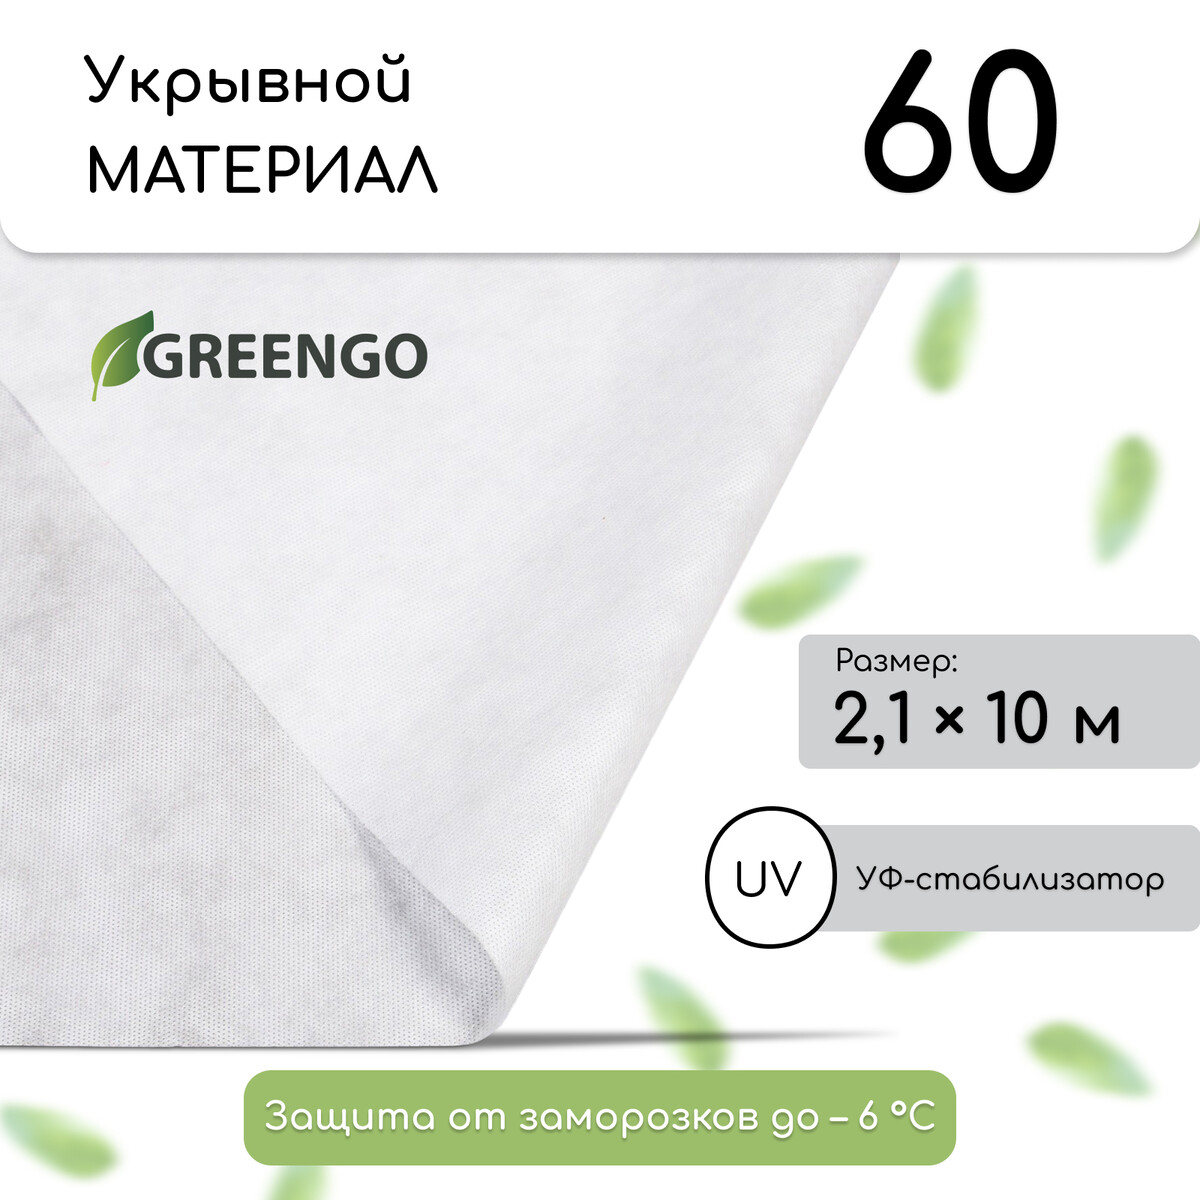 Материал укрывной, 10 × 2,1 м, плотность 60 г/м², спанбонд с уф-стабилизатором, белый, greengo, эконом 30%